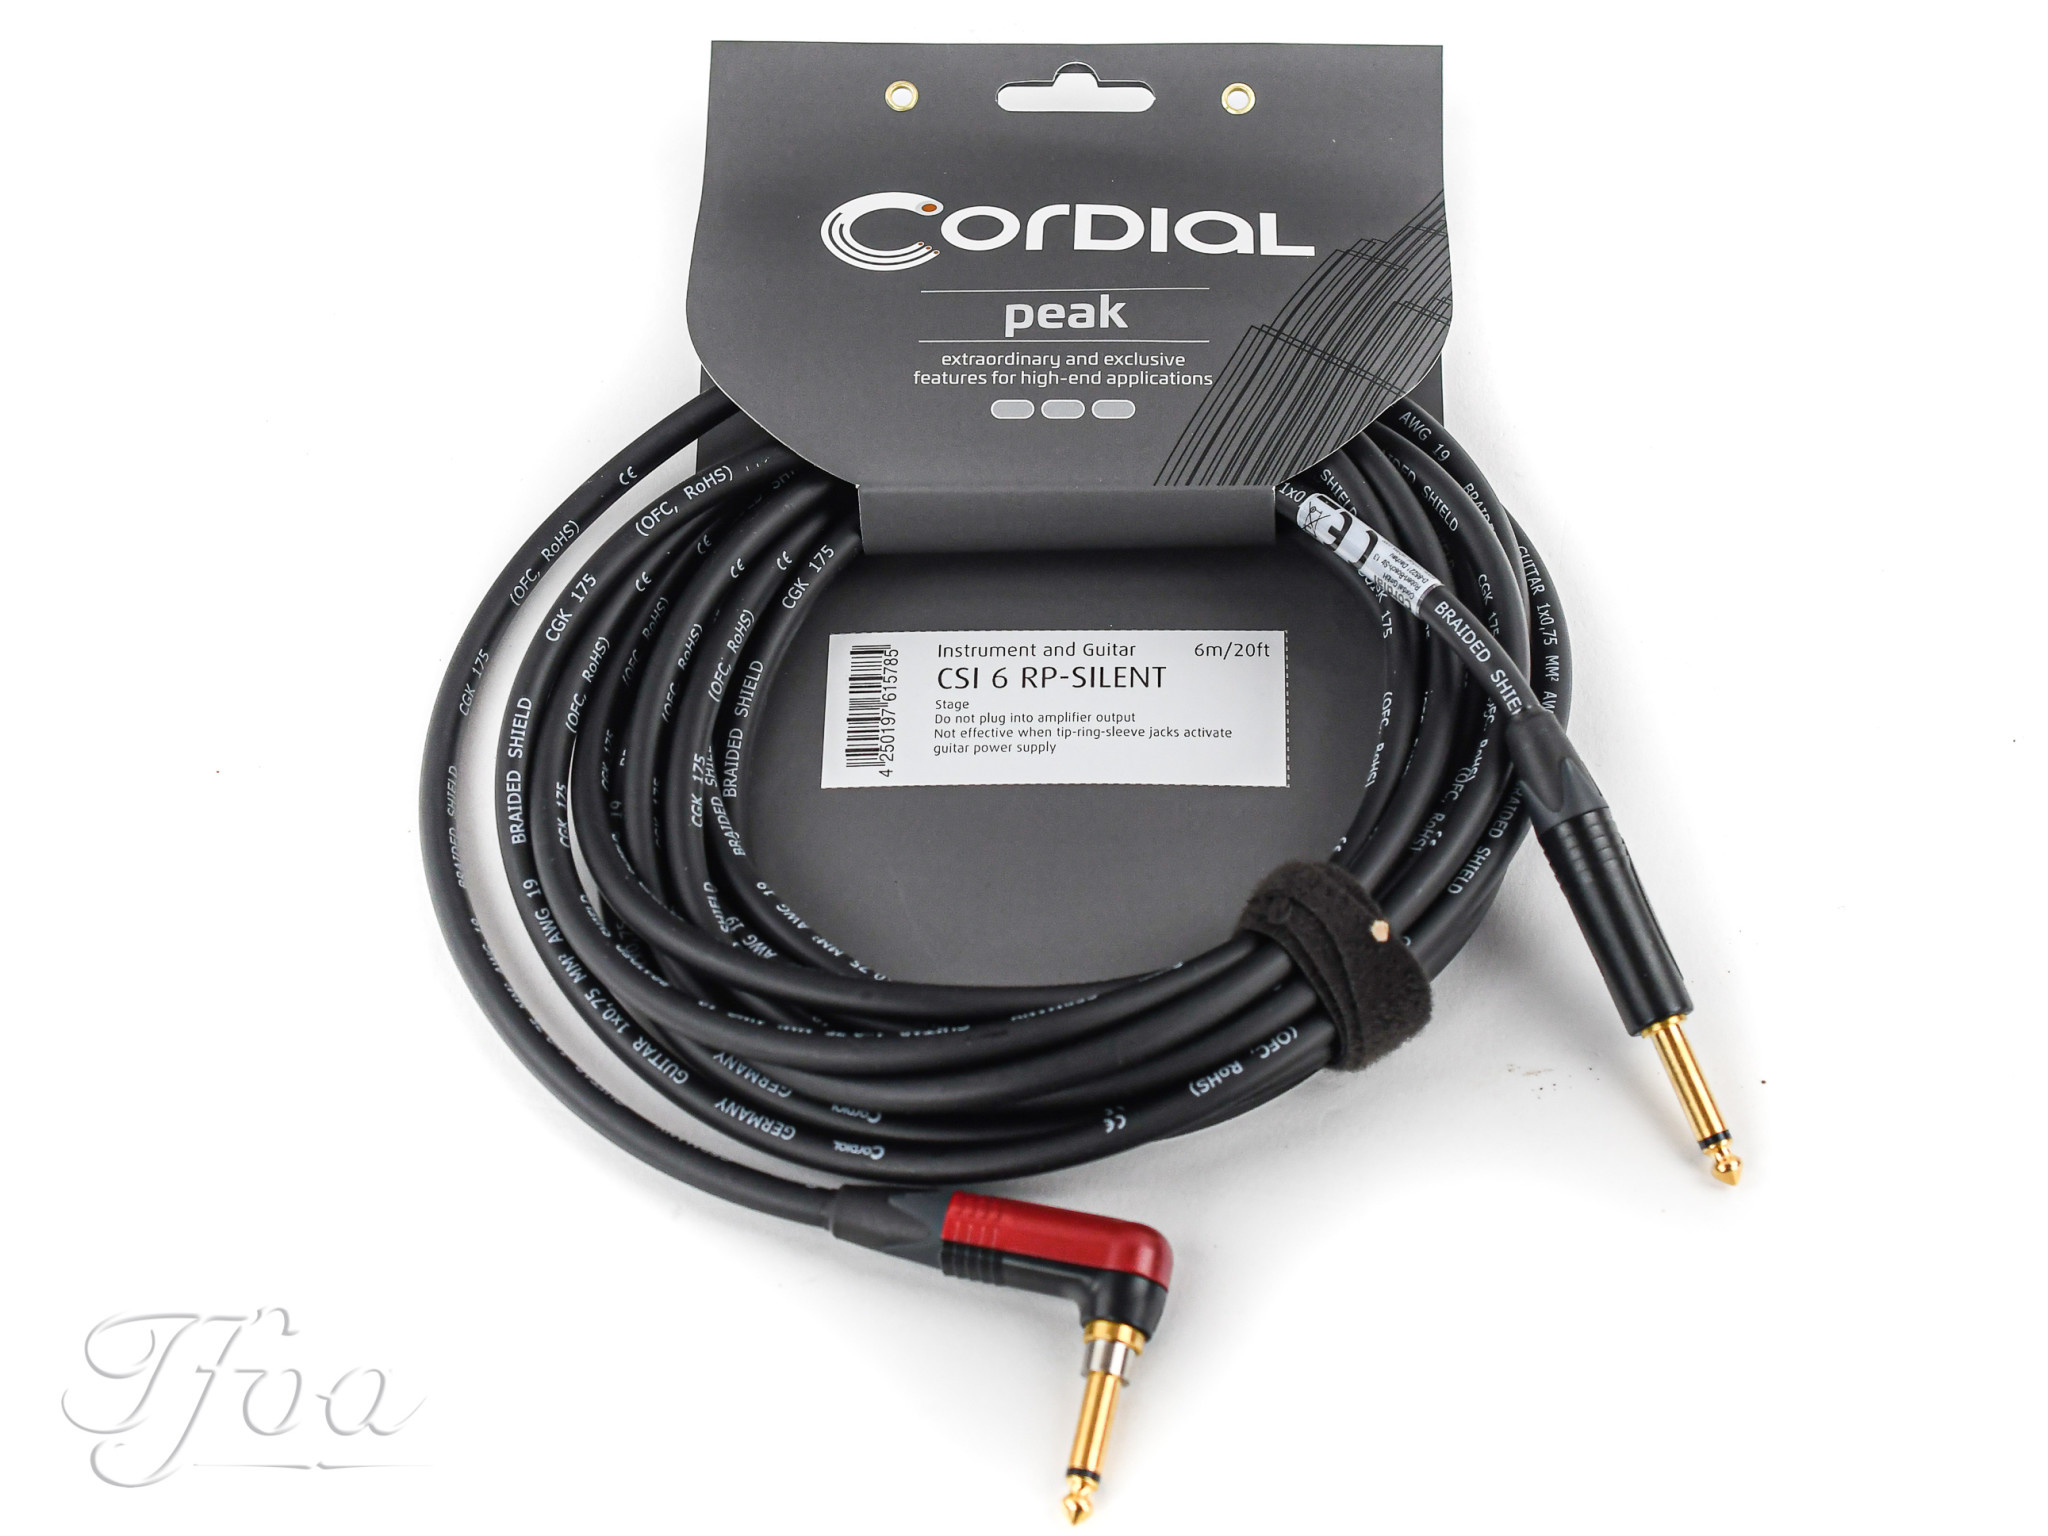 ダイハツ Reference Cables RICT 01 キーボード用 L-R ケーブル 黒 4.5